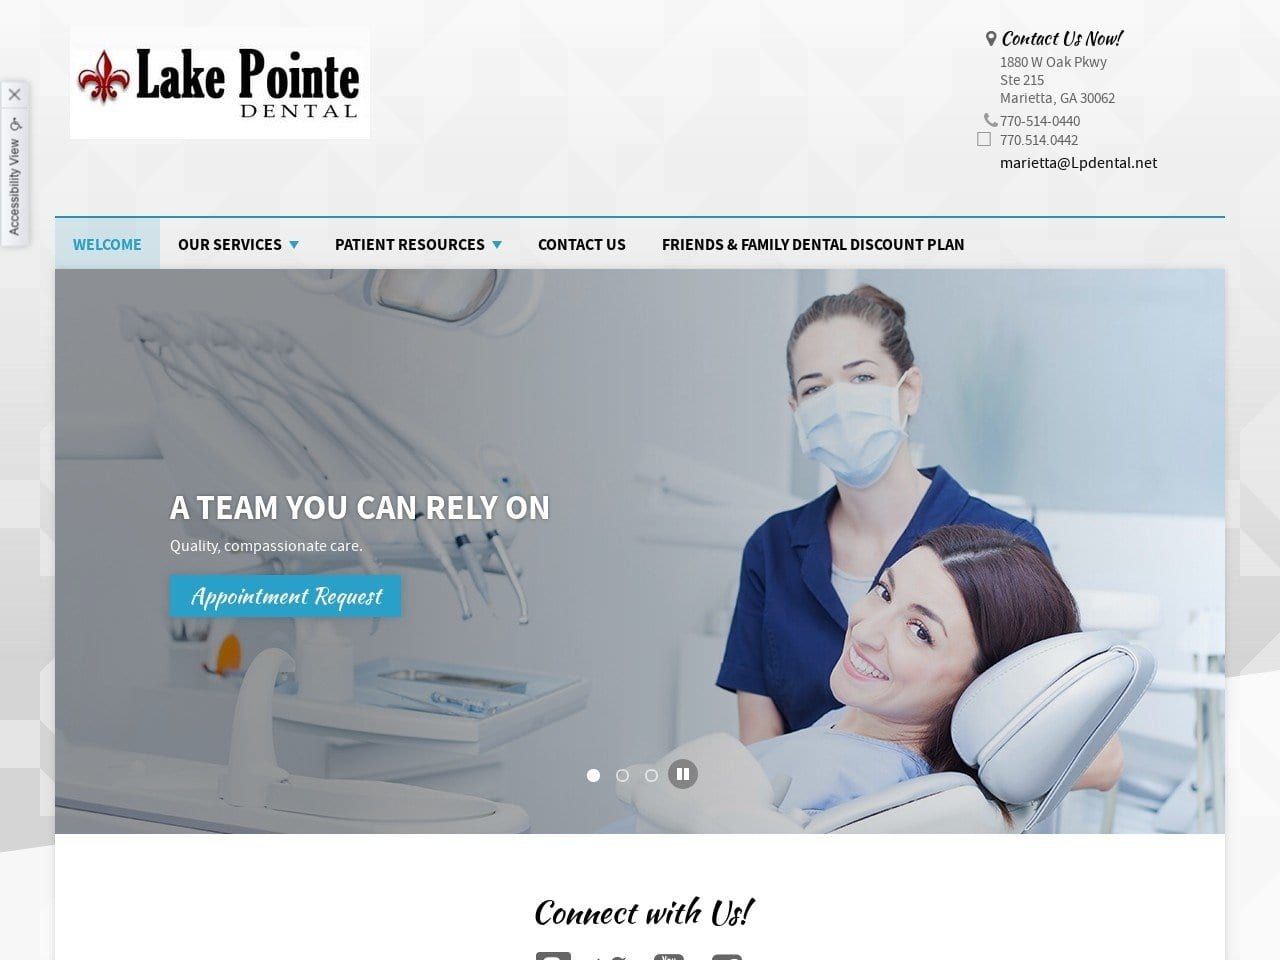 Lake Pointe Dental Marietta Website Screenshot from lakepointedentalmarietta.com